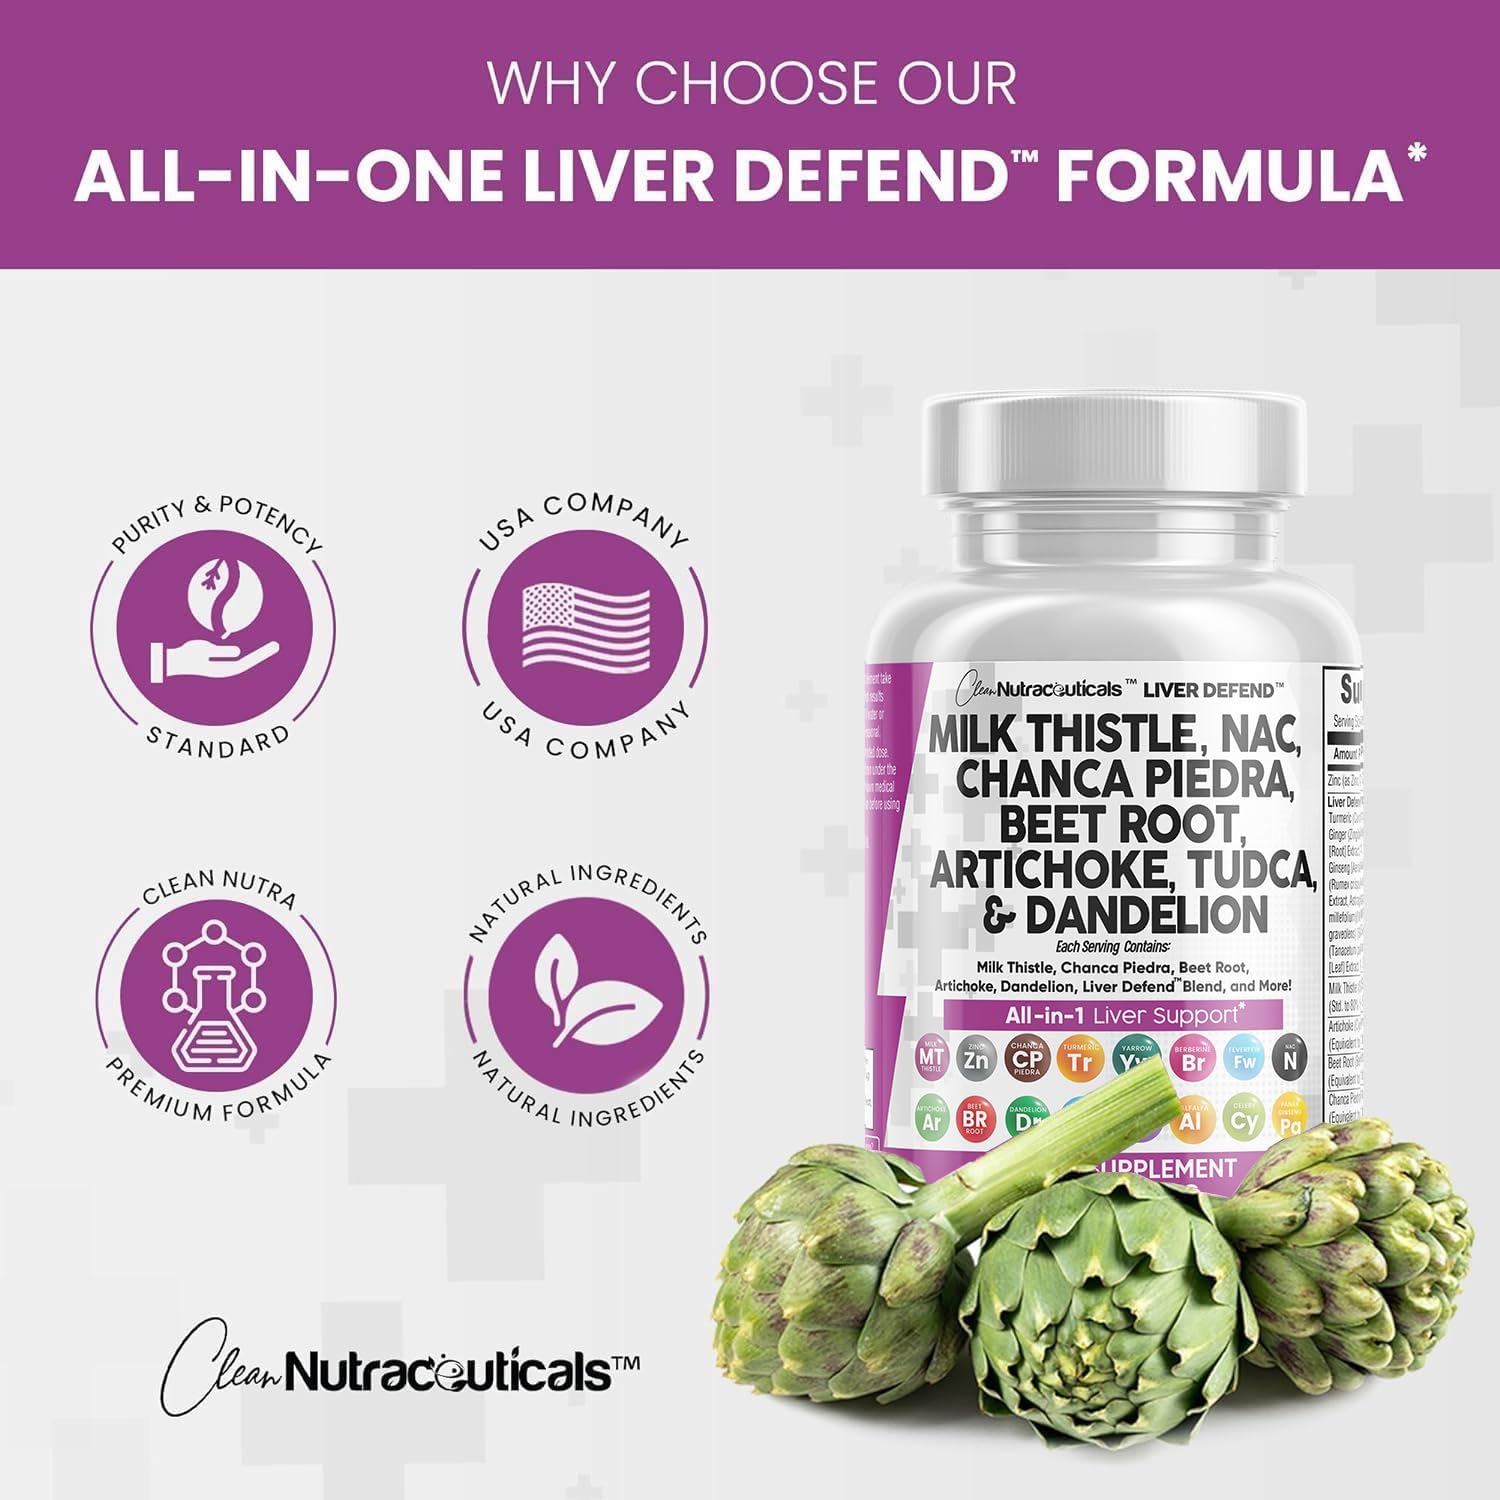 Liver Defend™ Supplement